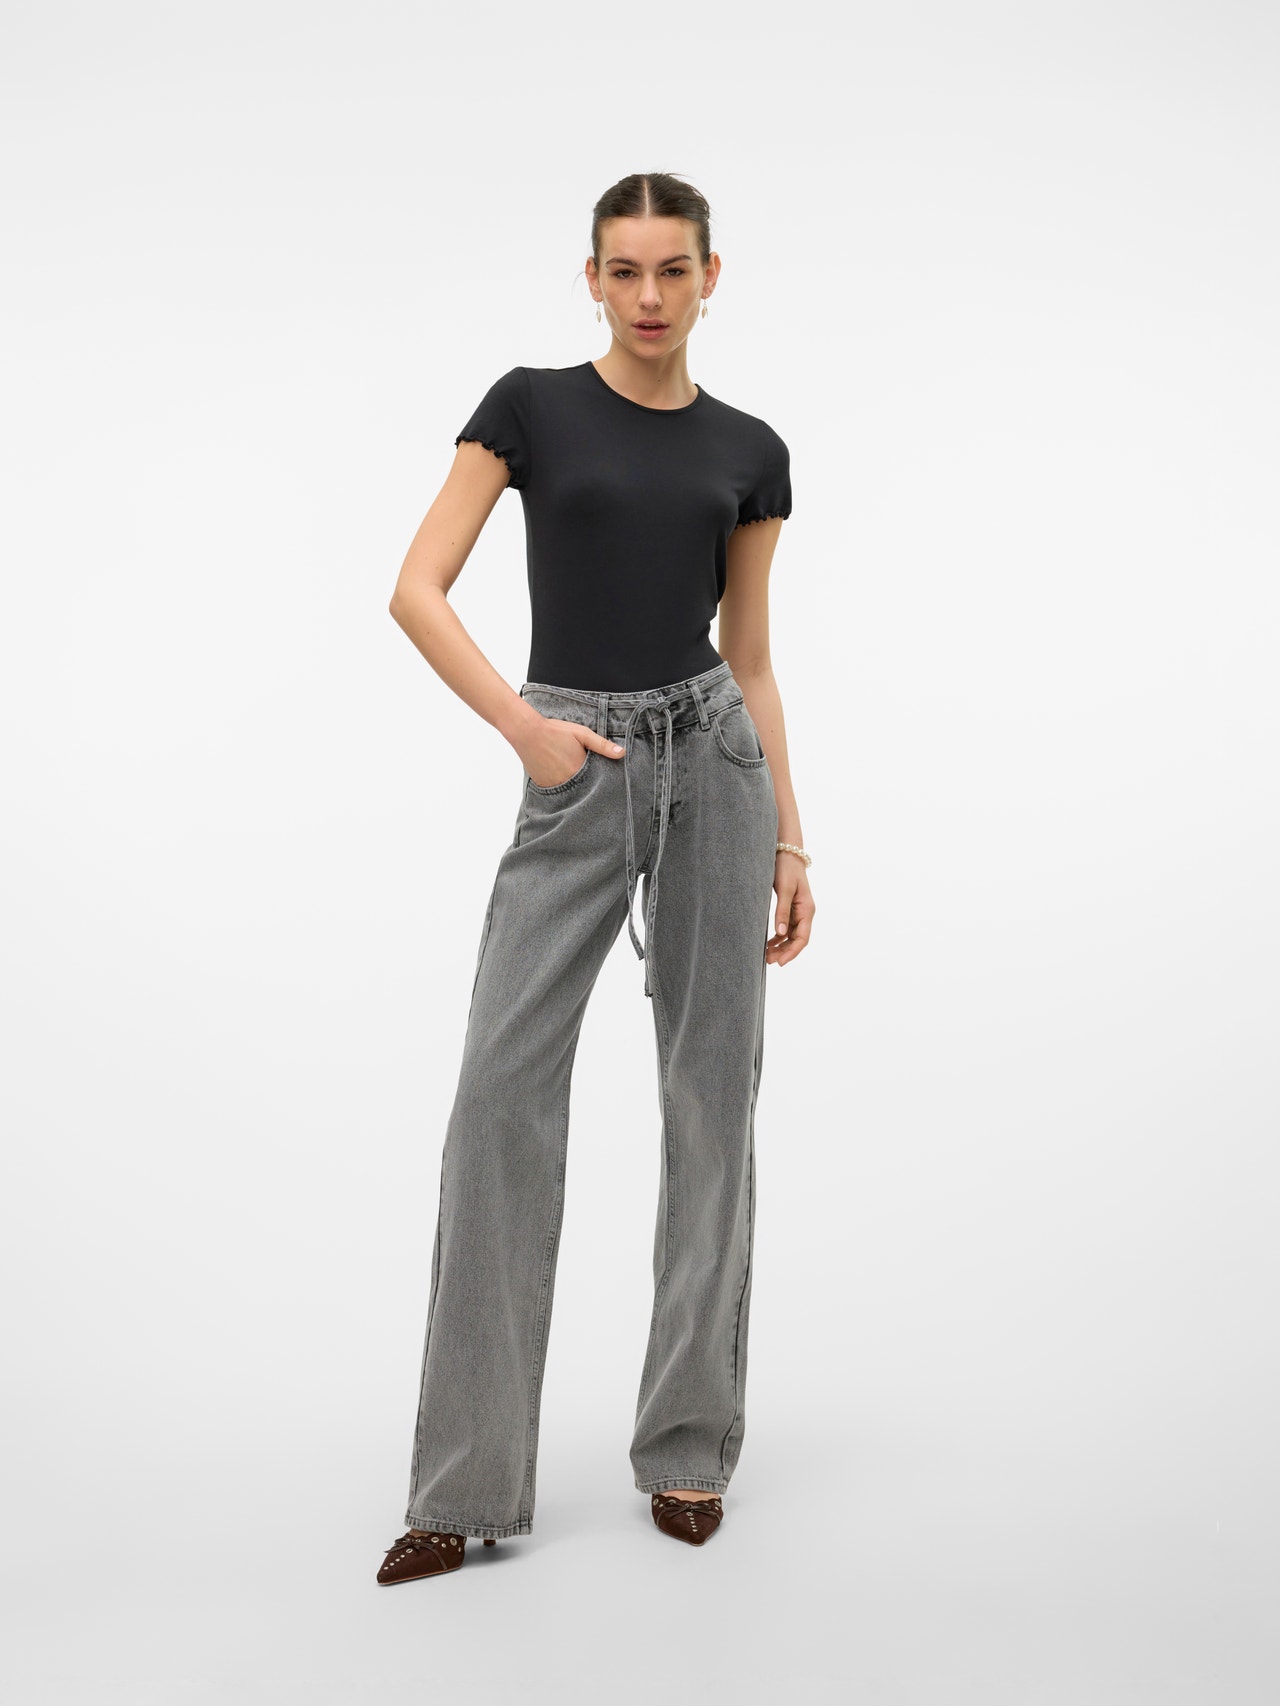 Vero Moda SOMETHINGNEW Jeans -Light Grey Denim - 10317086